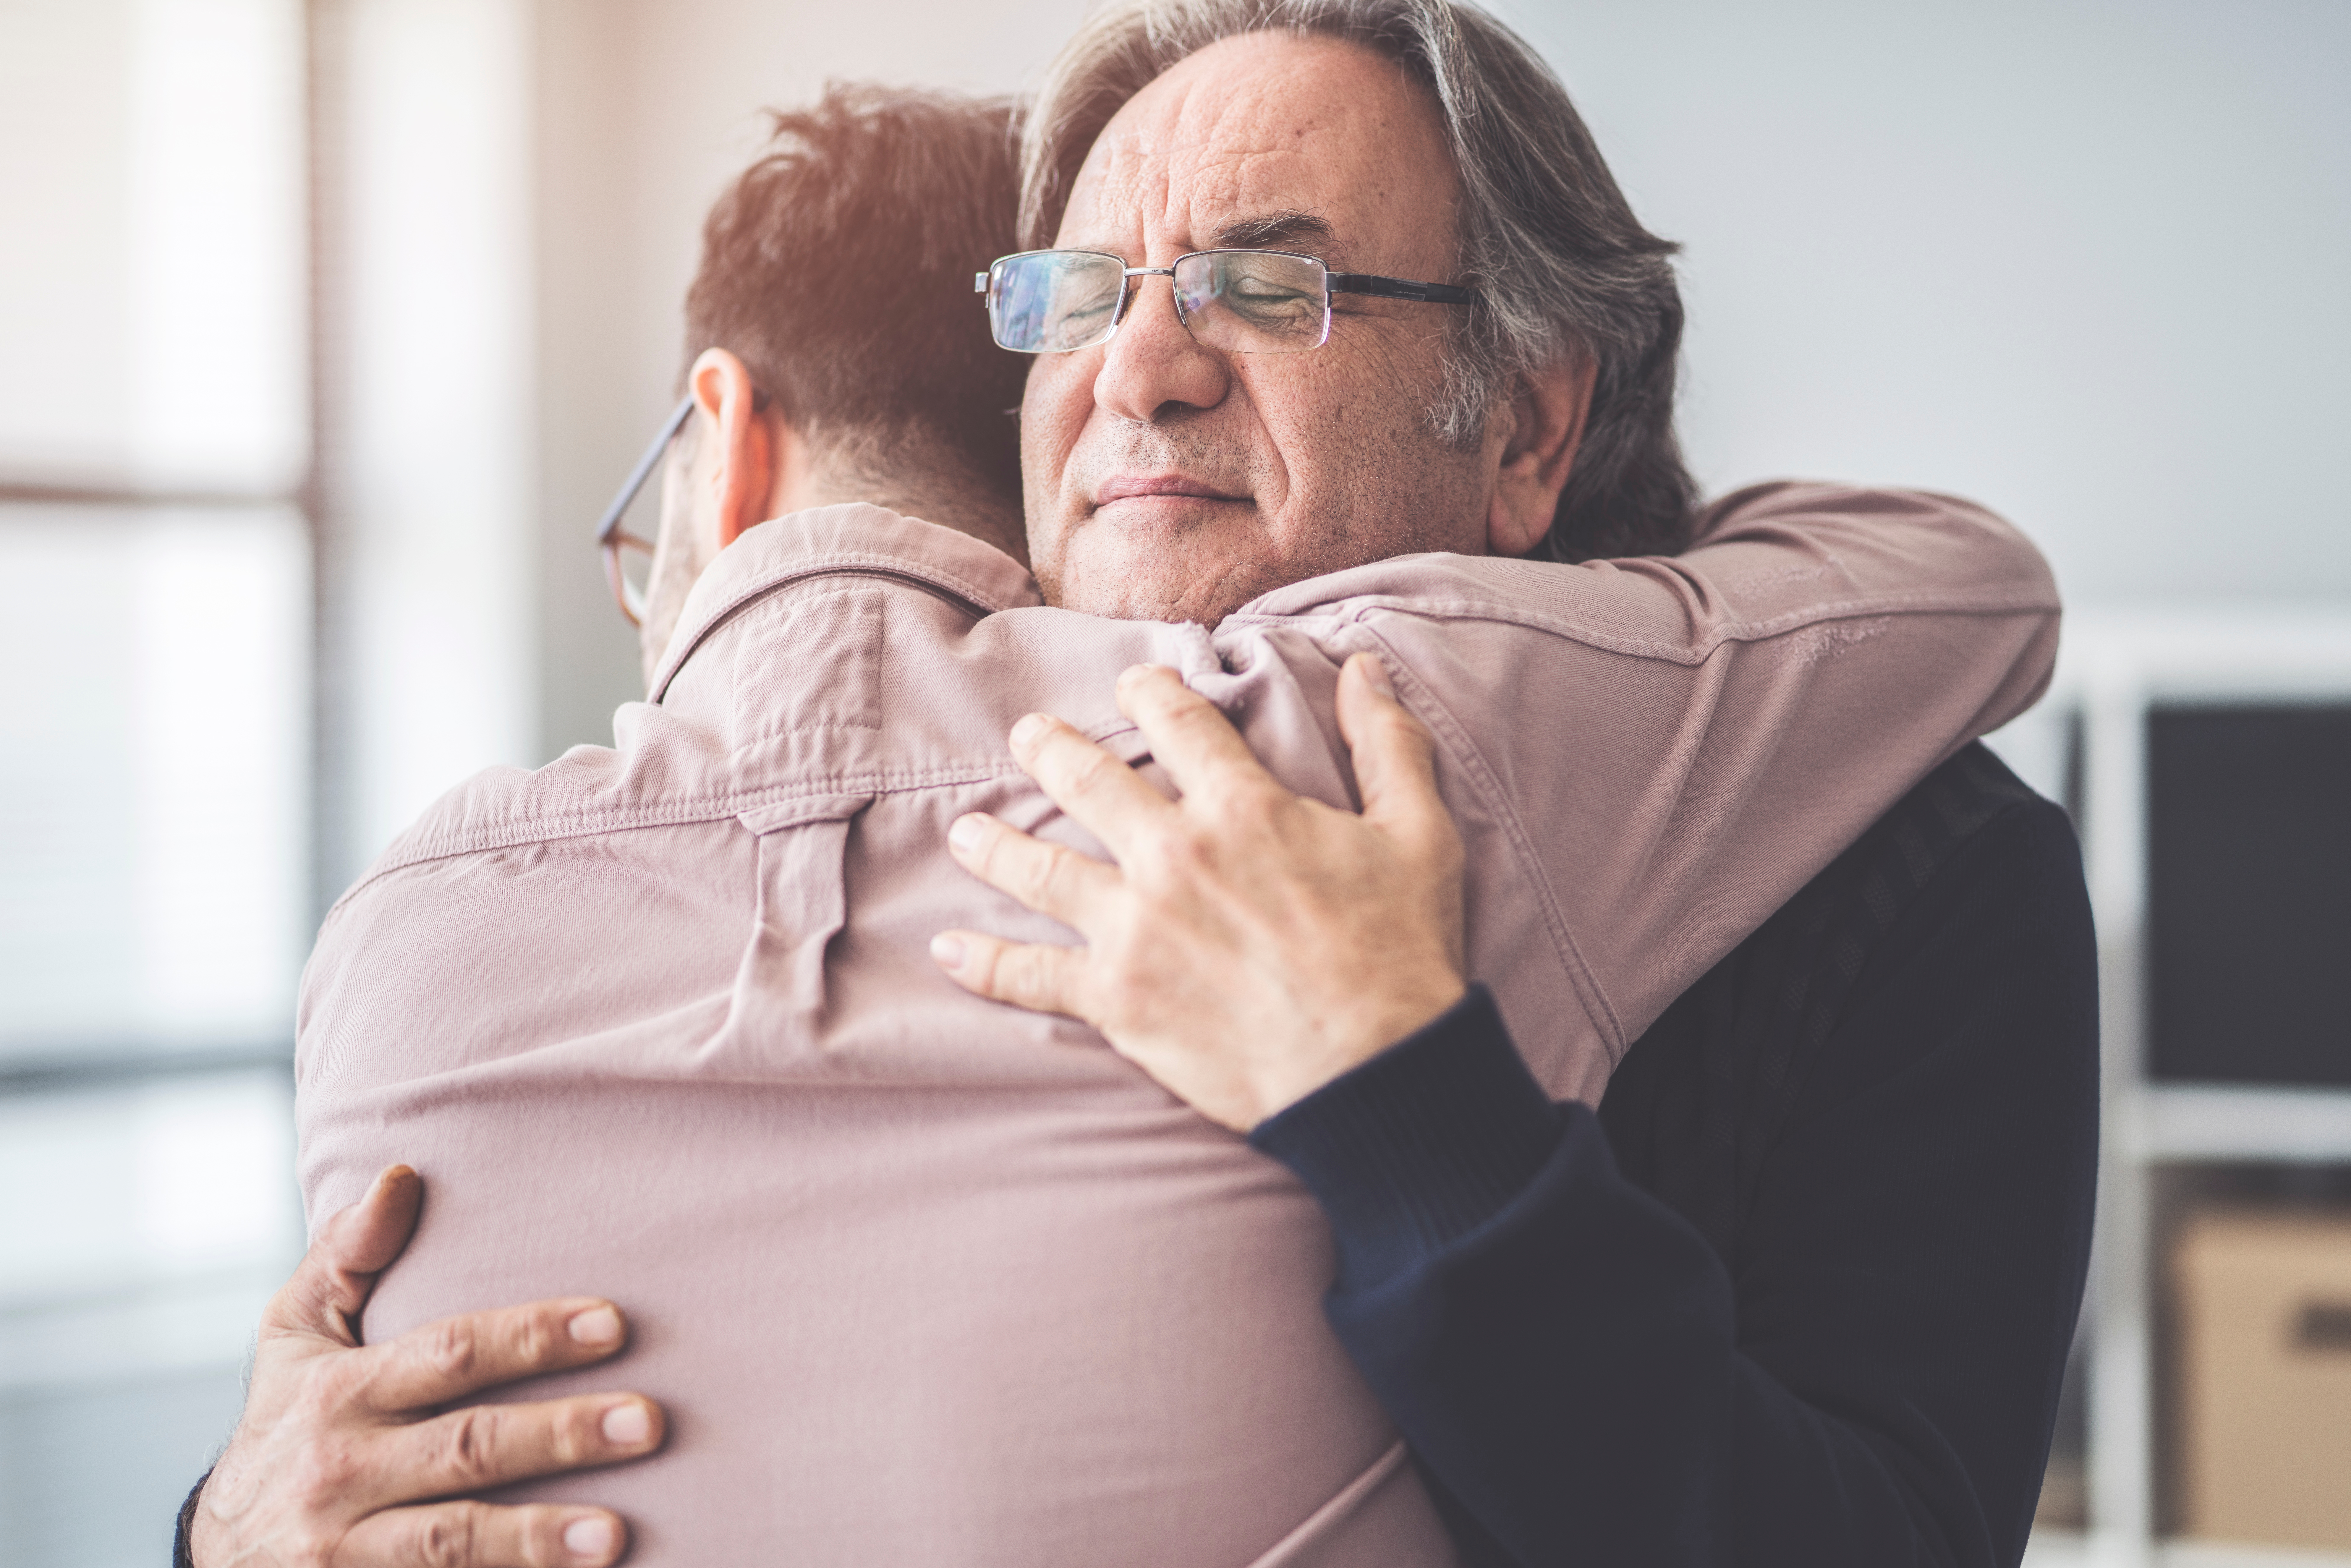 A man hugging an older man | Source: Shutterstock